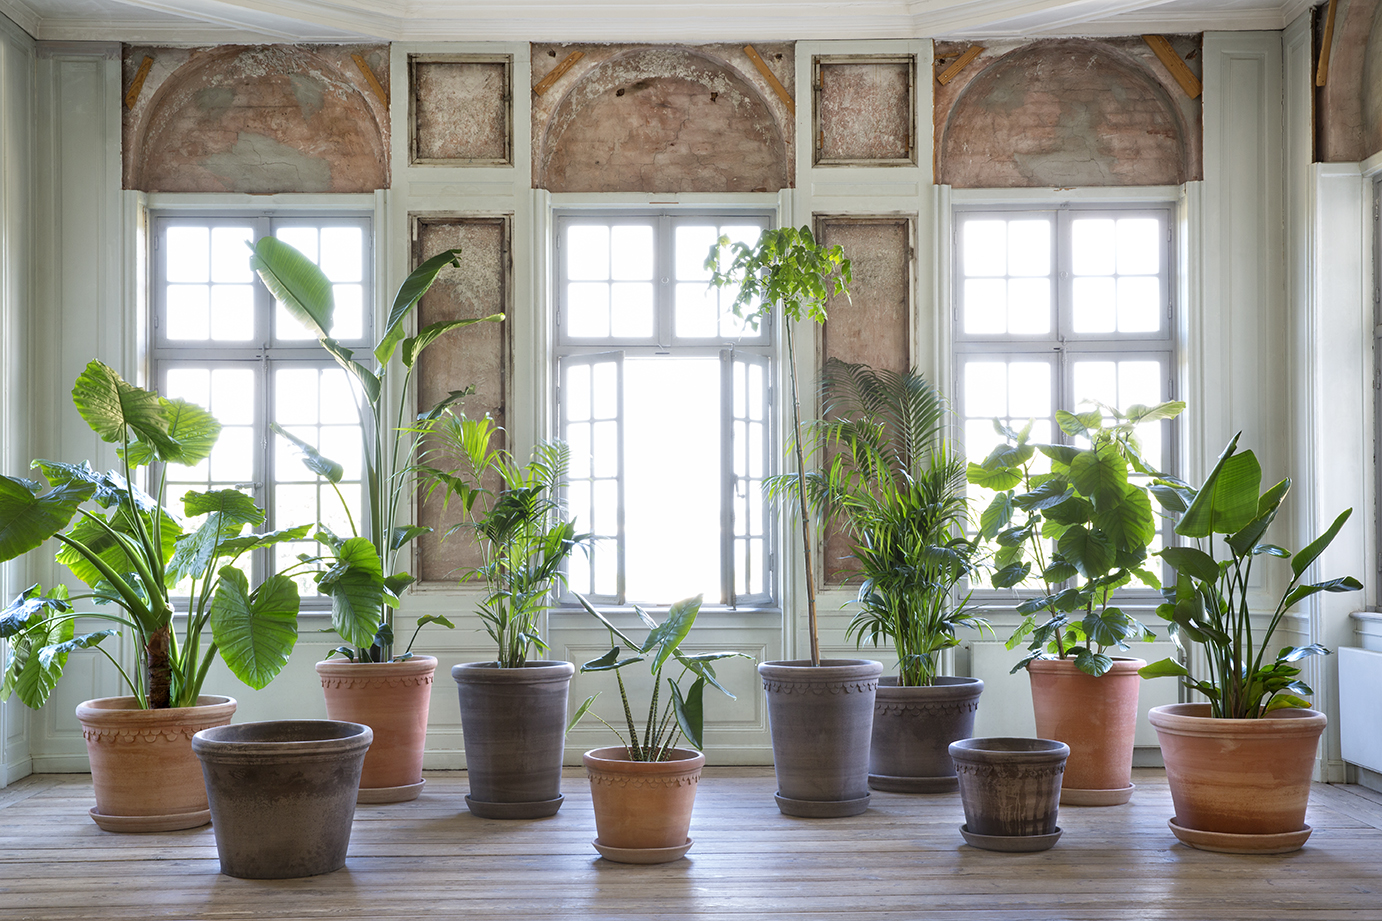 Large Flora and Københavner pots in living room